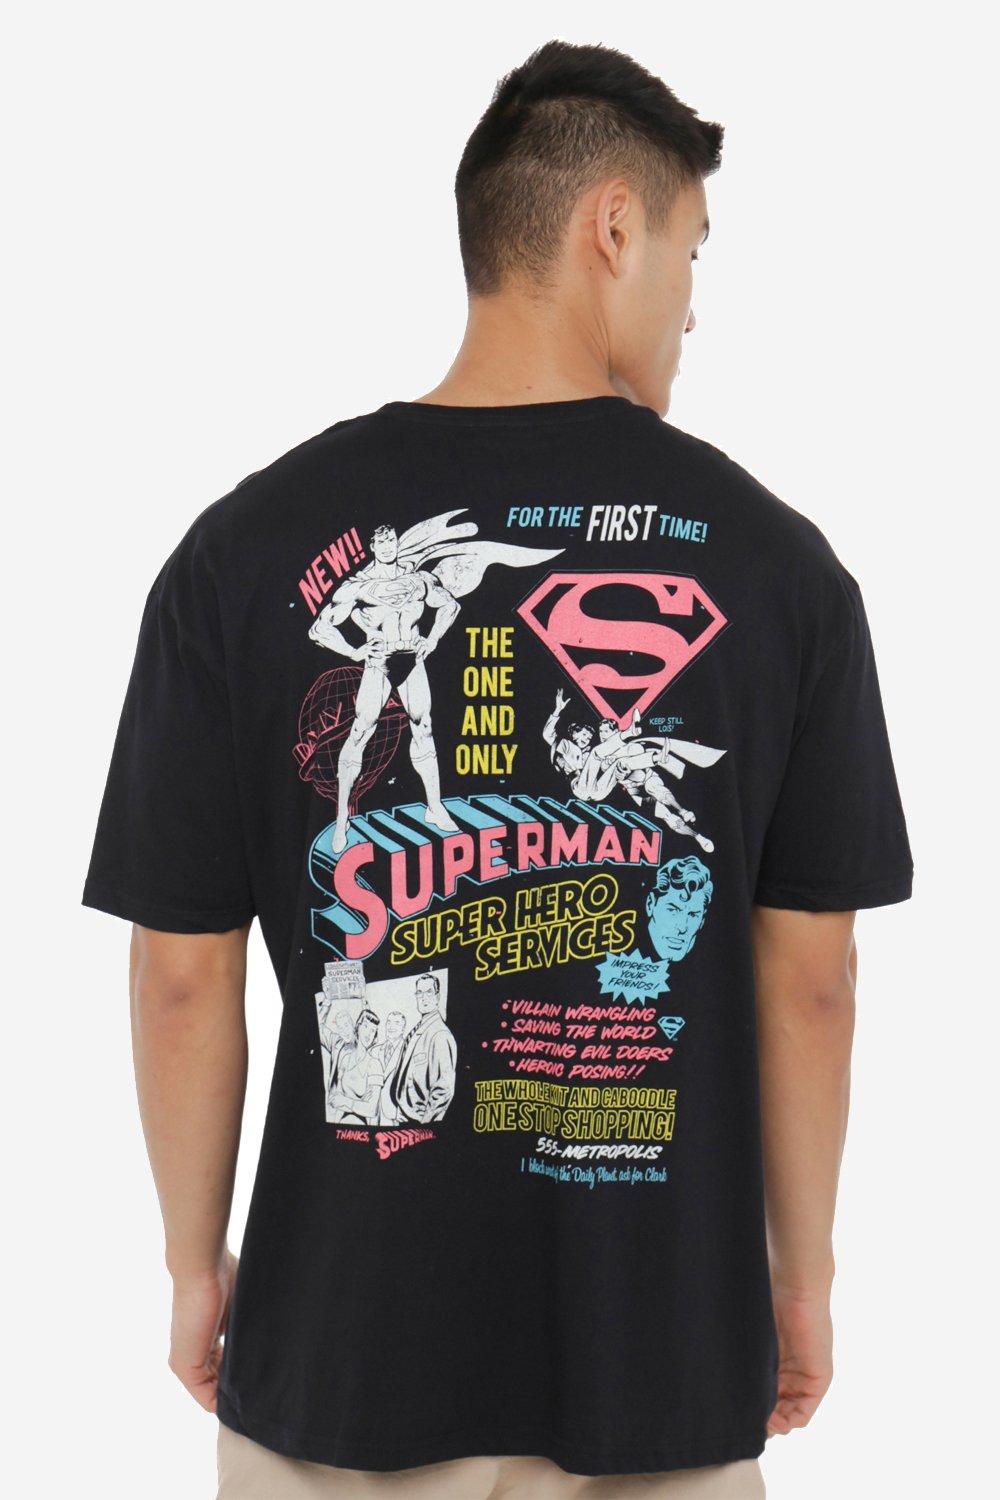 Мужская футболка Superman Super Hero Services DC Comics, черный шейкер super hero superman 600 ml